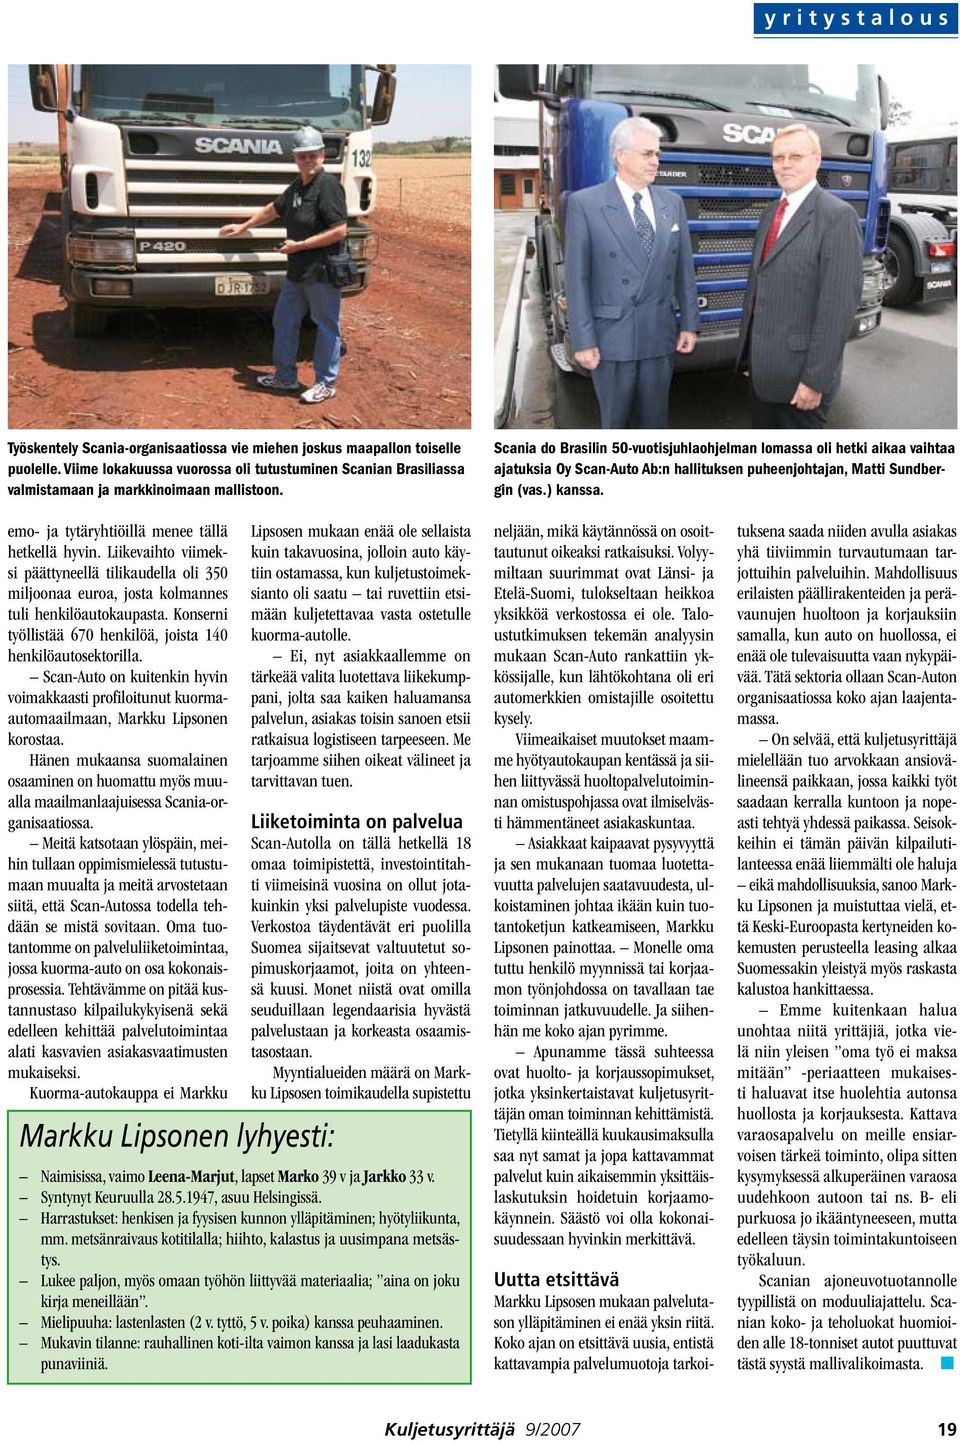 Scania do Brasilin 50-vuotisjuhlaohjelman lomassa oli hetki aikaa vaihtaa ajatuksia Oy Scan-Auto Ab:n hallituksen puheenjohtajan, Matti Sundbergin (vas.) kanssa.